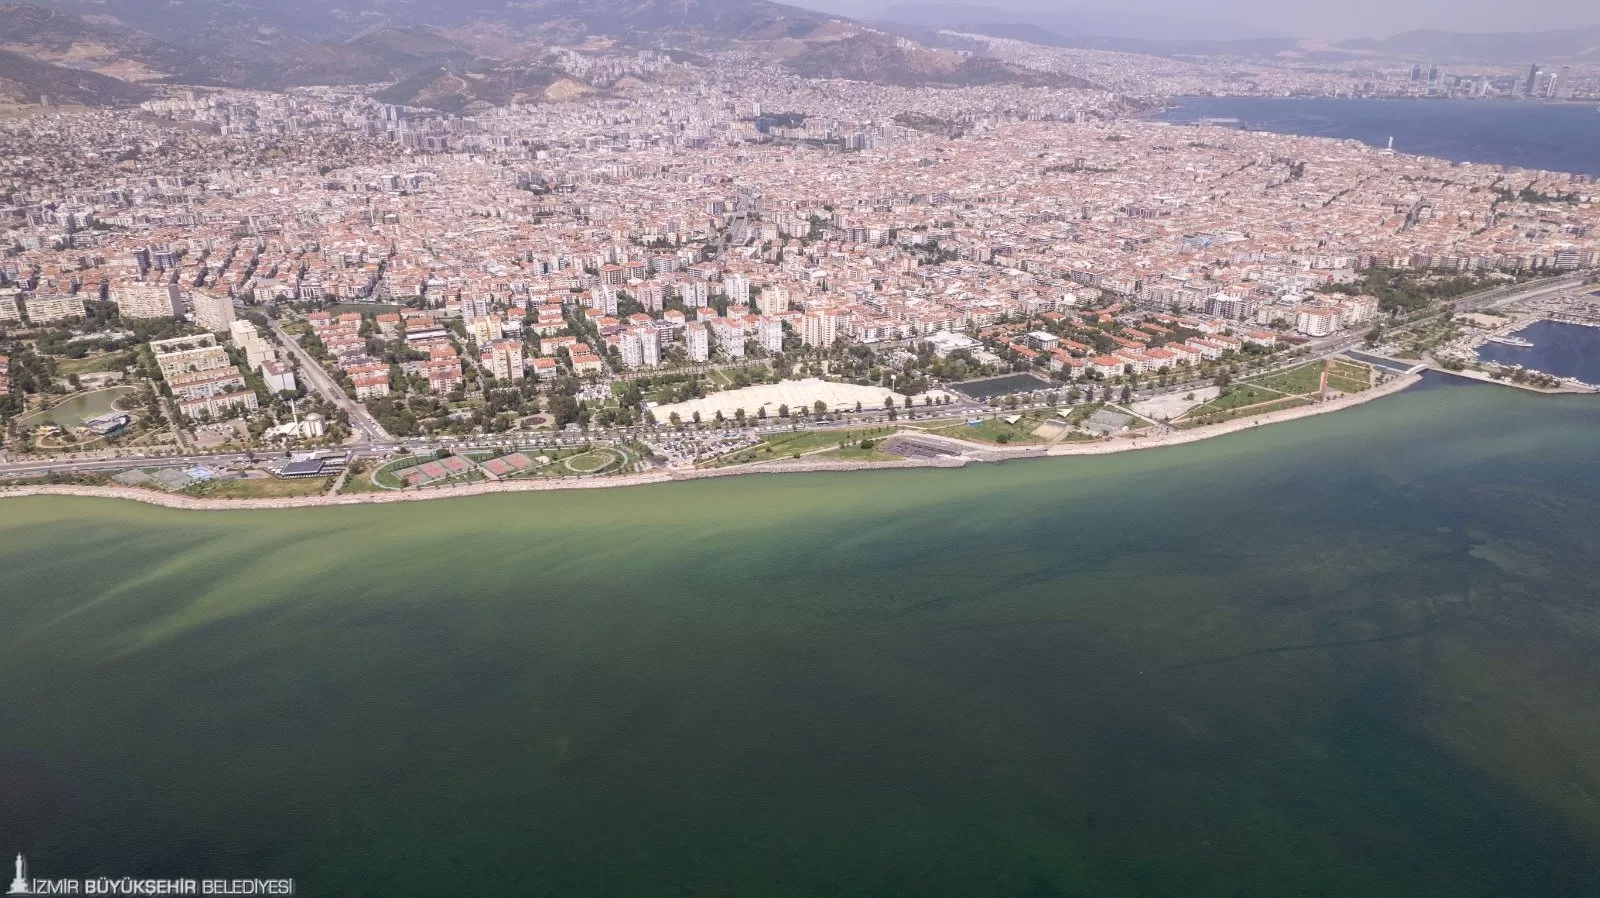 İzmir'de son günlerde artan hava sıcaklıkları, İzmir Körfezi'nde plankton patlamasına neden oldu. Bu durum, deniz suyunun renginde değişikliklere yol açtı.